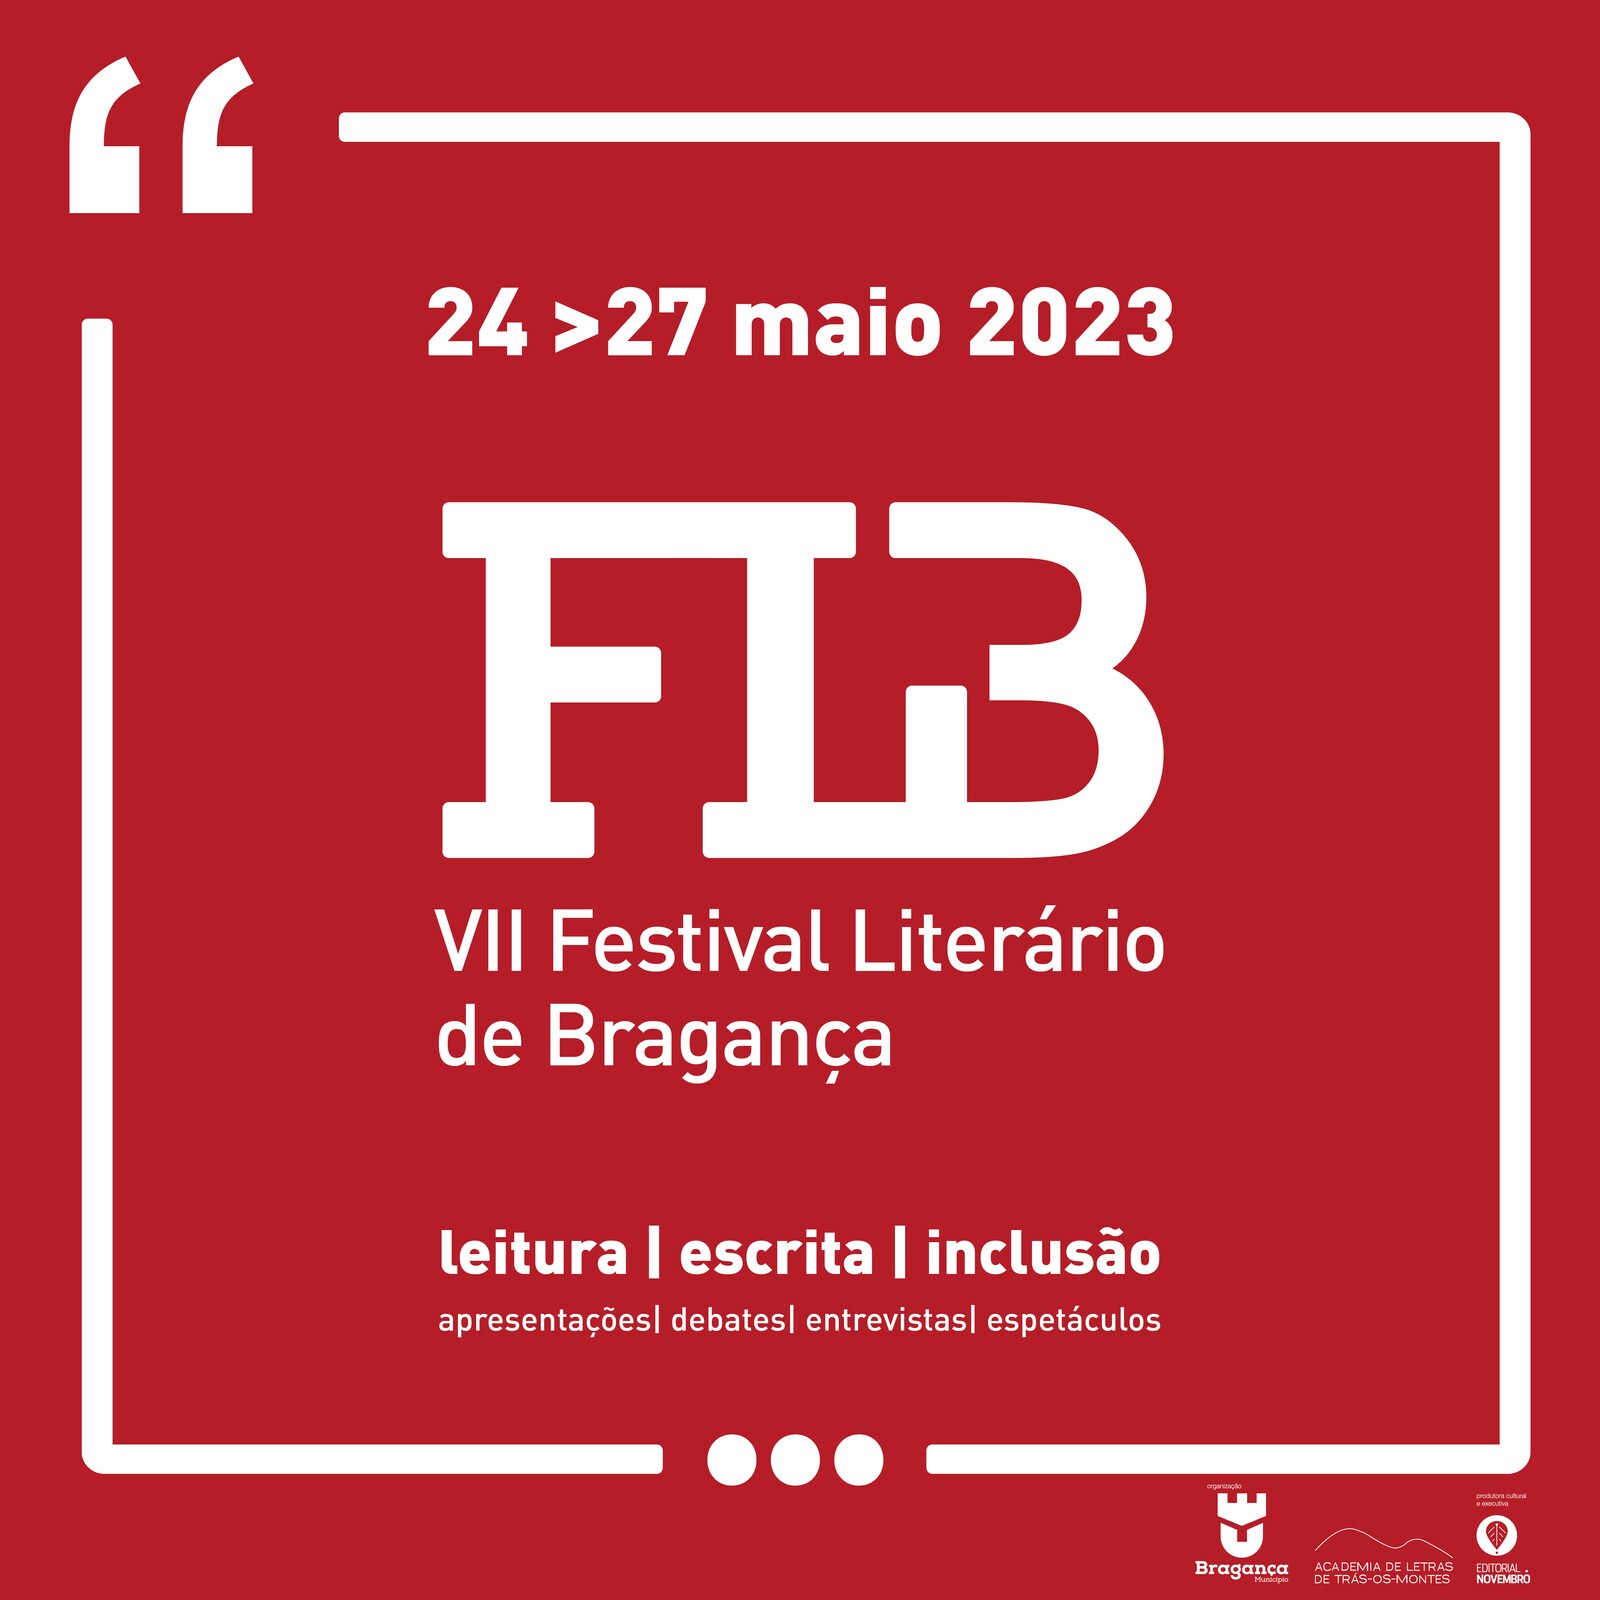 Festival Literário de Bragança